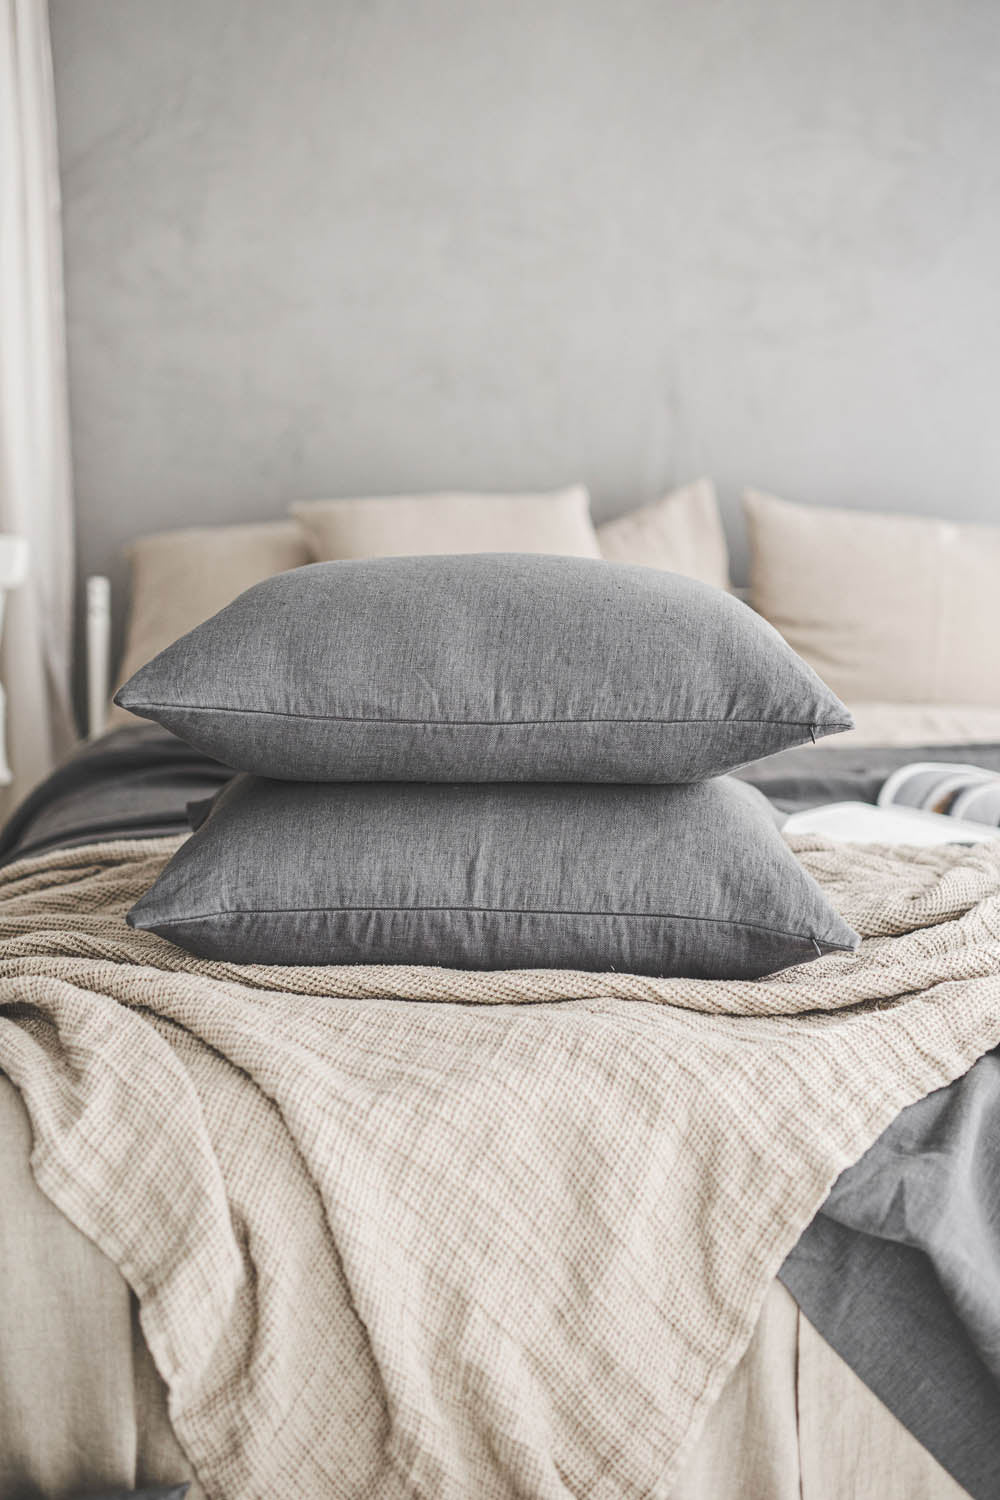 Charcoal gray heavyweight linen pillowcase